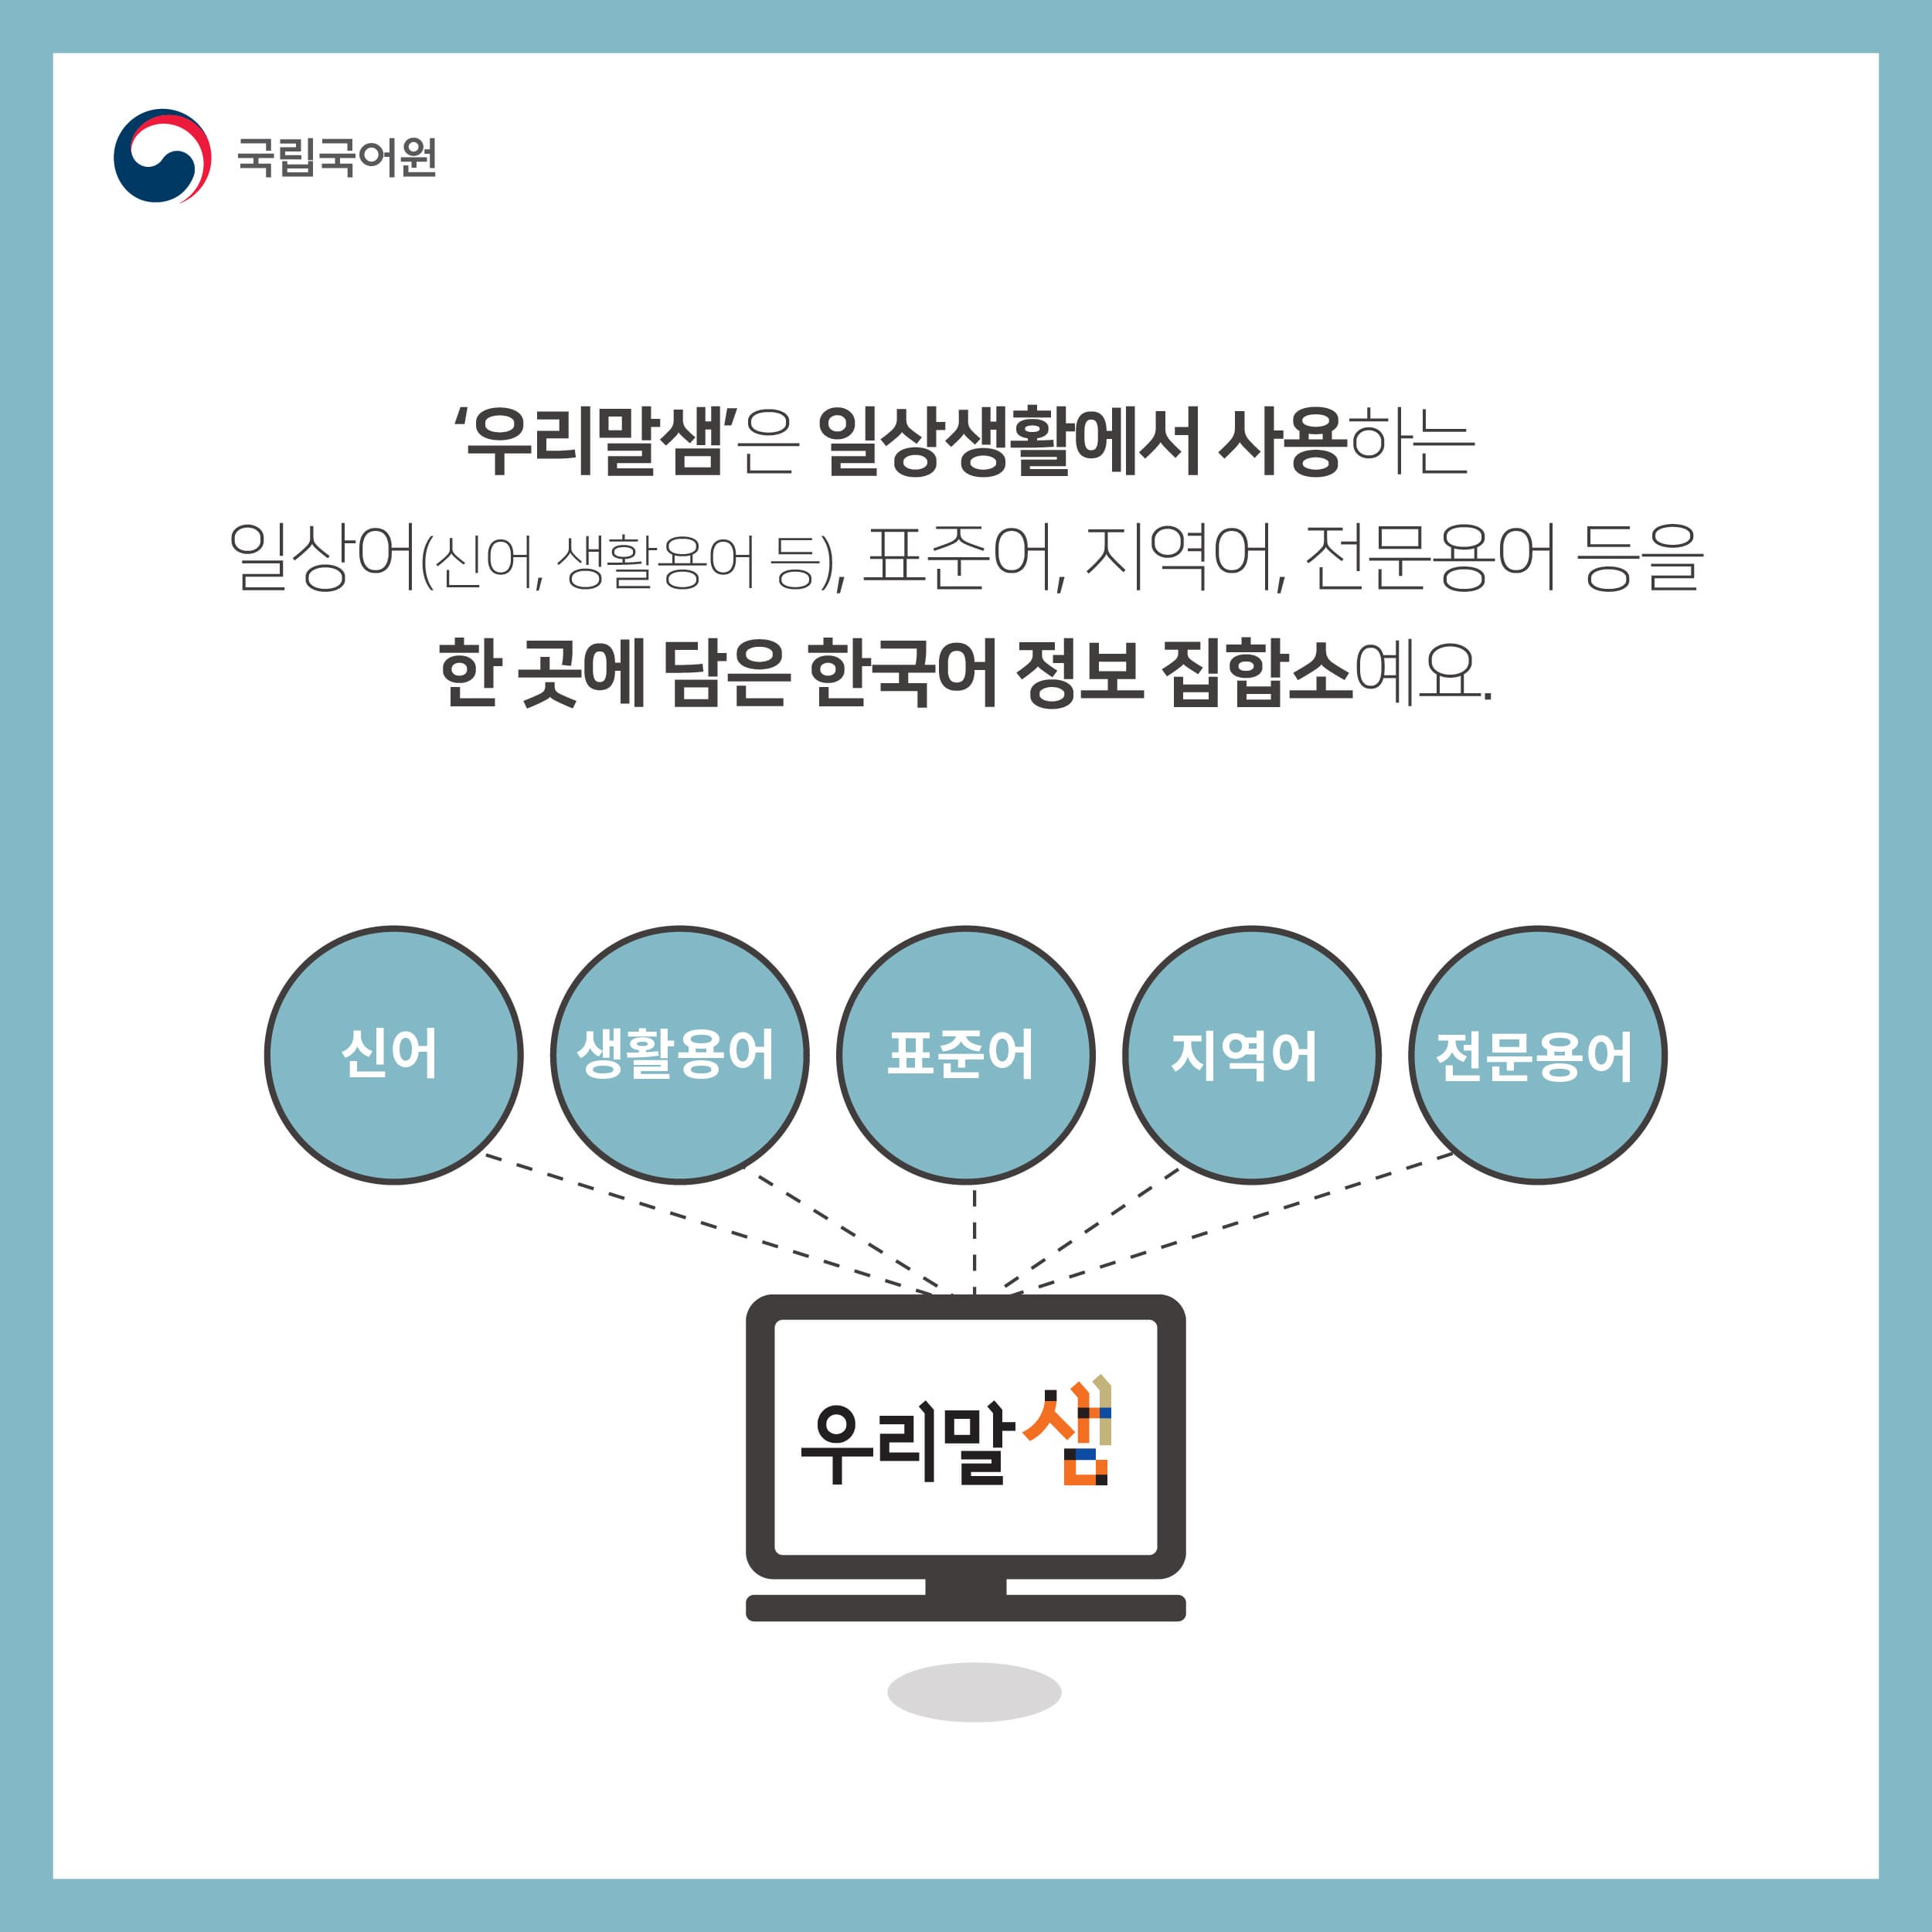 우리말샘은 일상생활에서 사용하는 일상어(신어, 생활용어 등), 표준어, 지역어, 전문용어 등을 한 곳에 담은 한국어 정보 집합소에요.